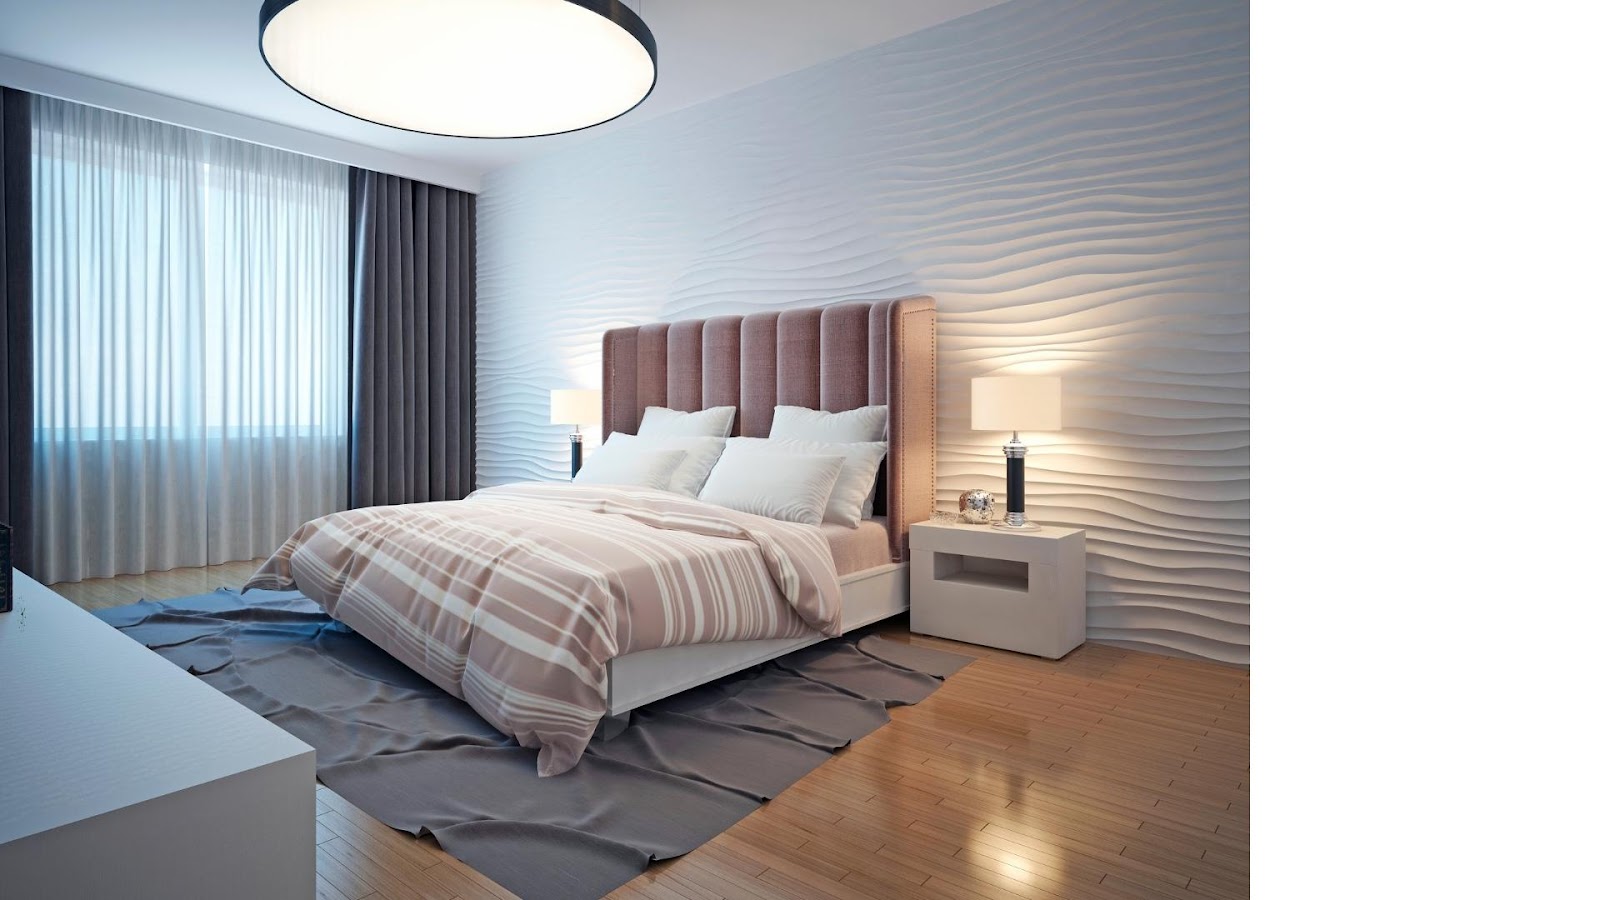 Jak vybrat světlo do ložnice, aby negativně neovlivňovalo kvalitu spánku? -  BydletSnadno.cz